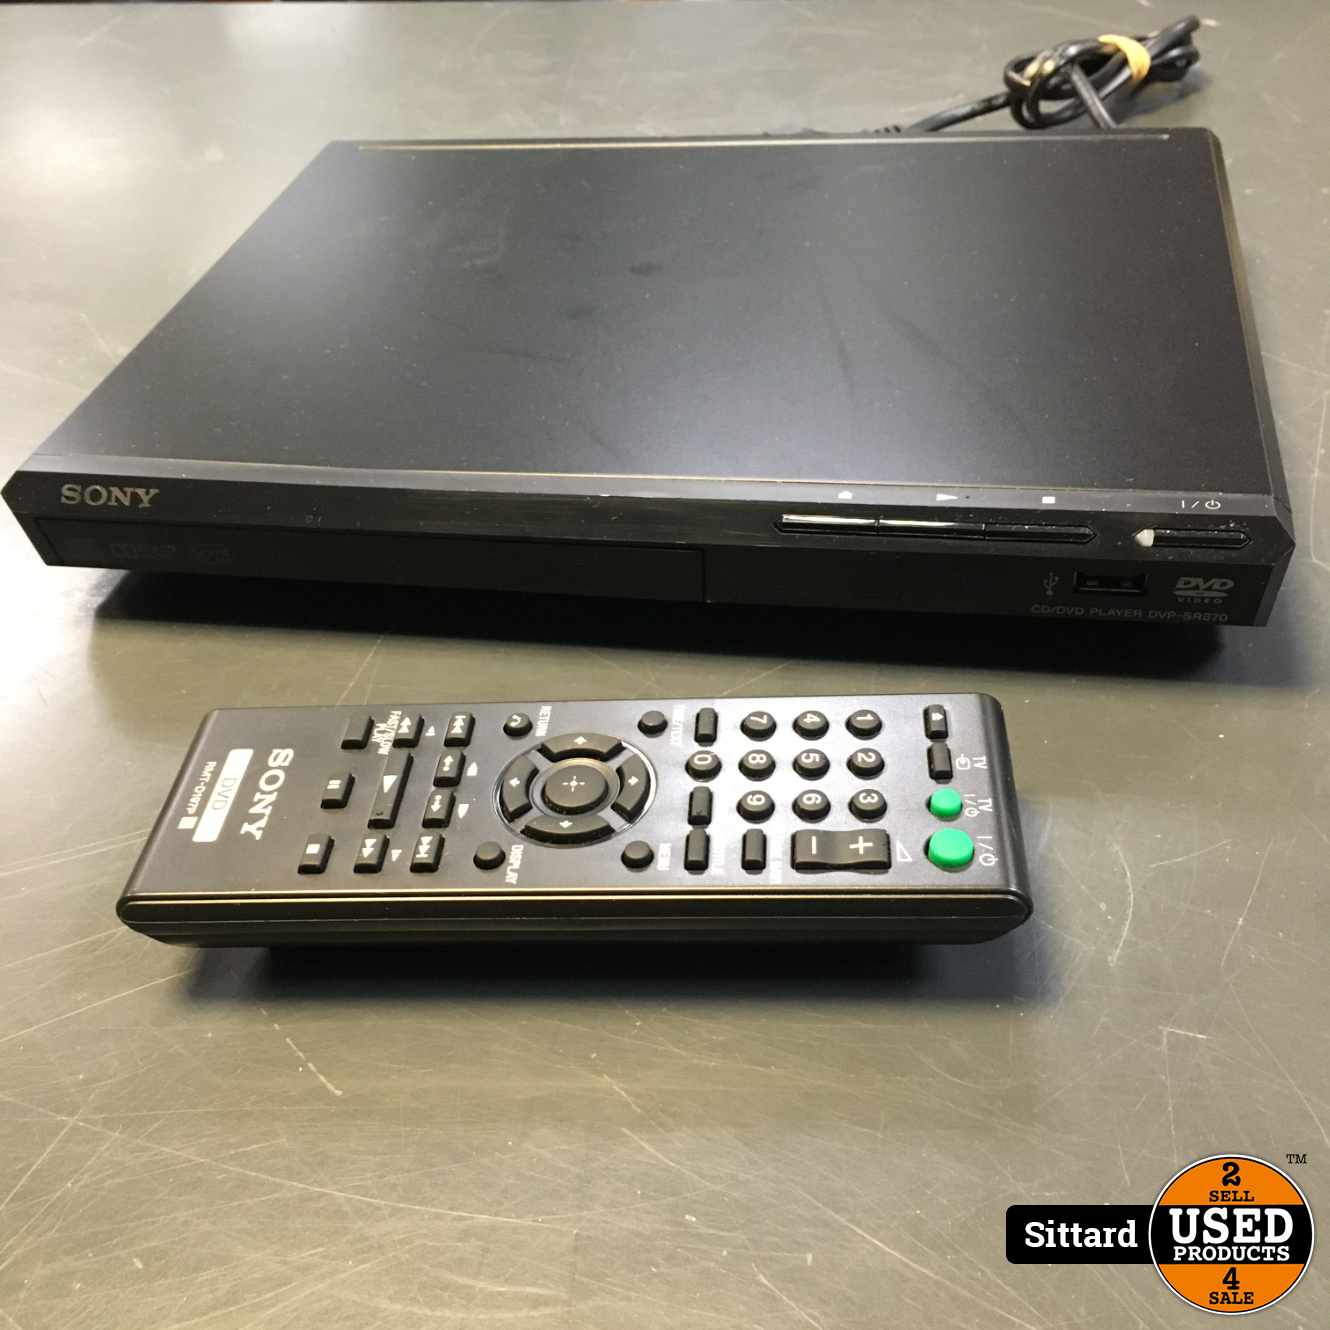 SONY DVD-speler met originele afstandsbediening - Used Products Sittard